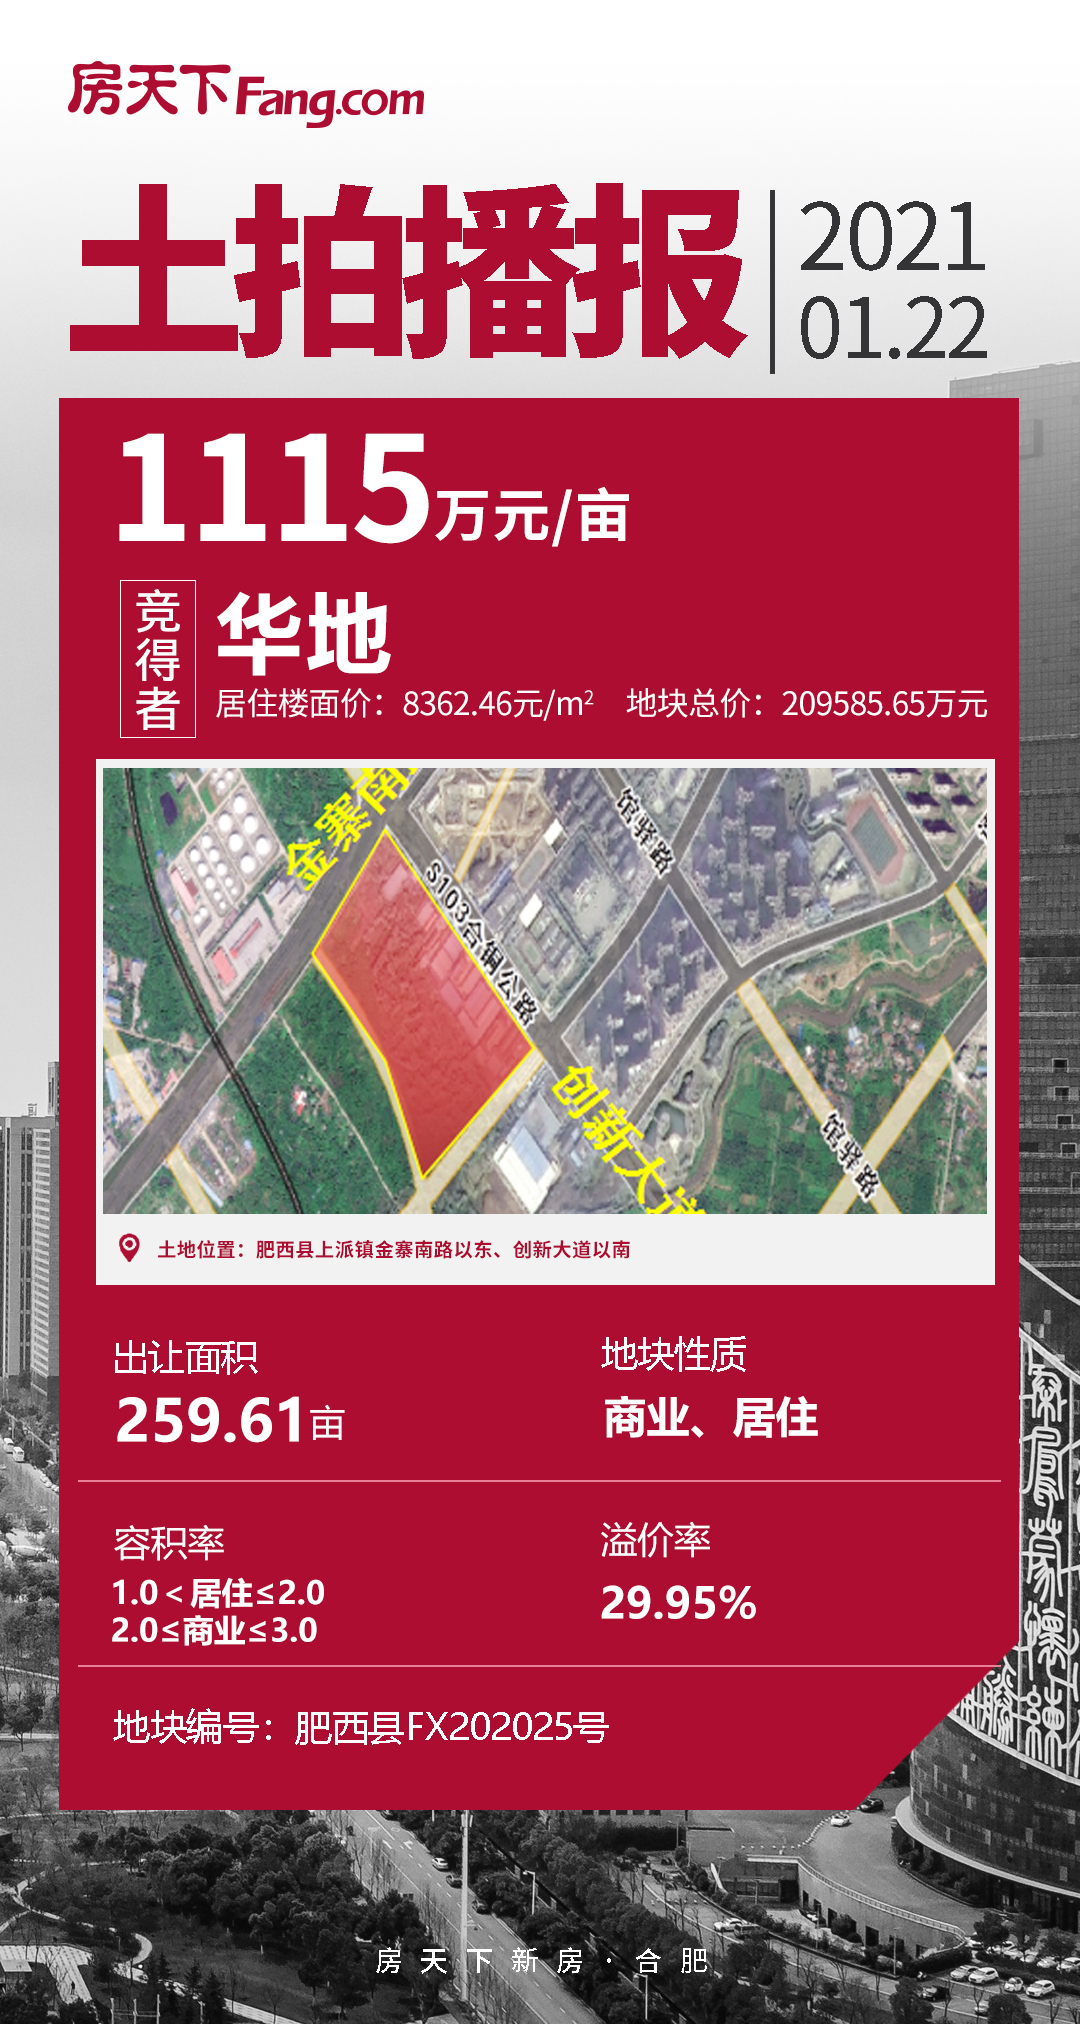 房天下快讯|华地以1115万元/亩竞得位于肥西上派金寨南路以东、创新大道以南的FX202025号地块